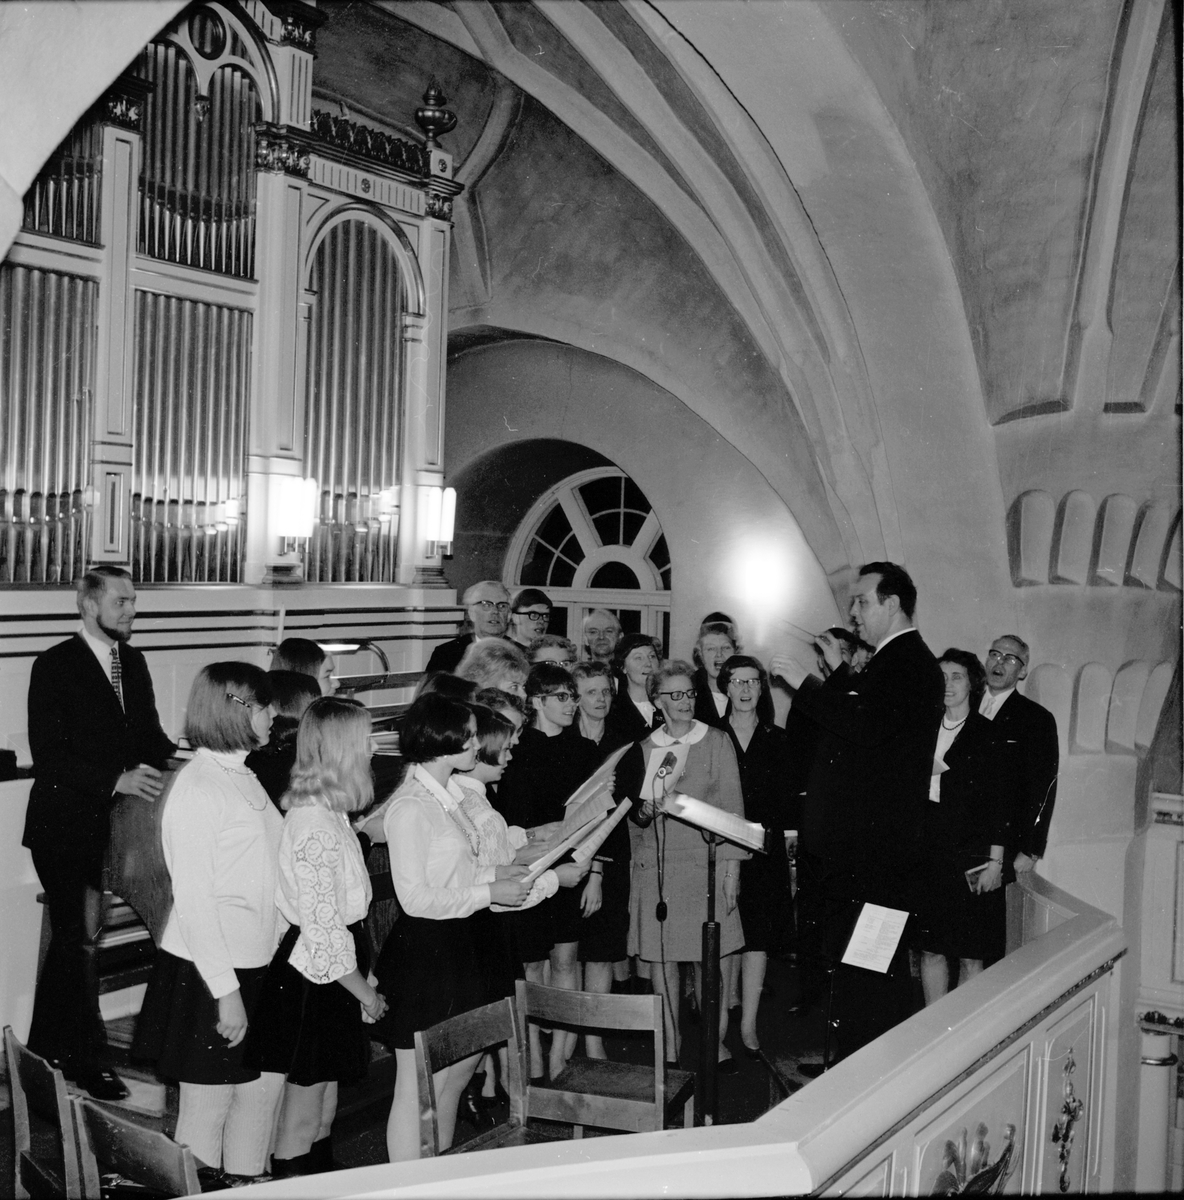 Arbrå kyrkokör med kantor Lingman.
Kyrkokonsert,
Musikandakt i Arbrå kyrka,
2 Februari 1969